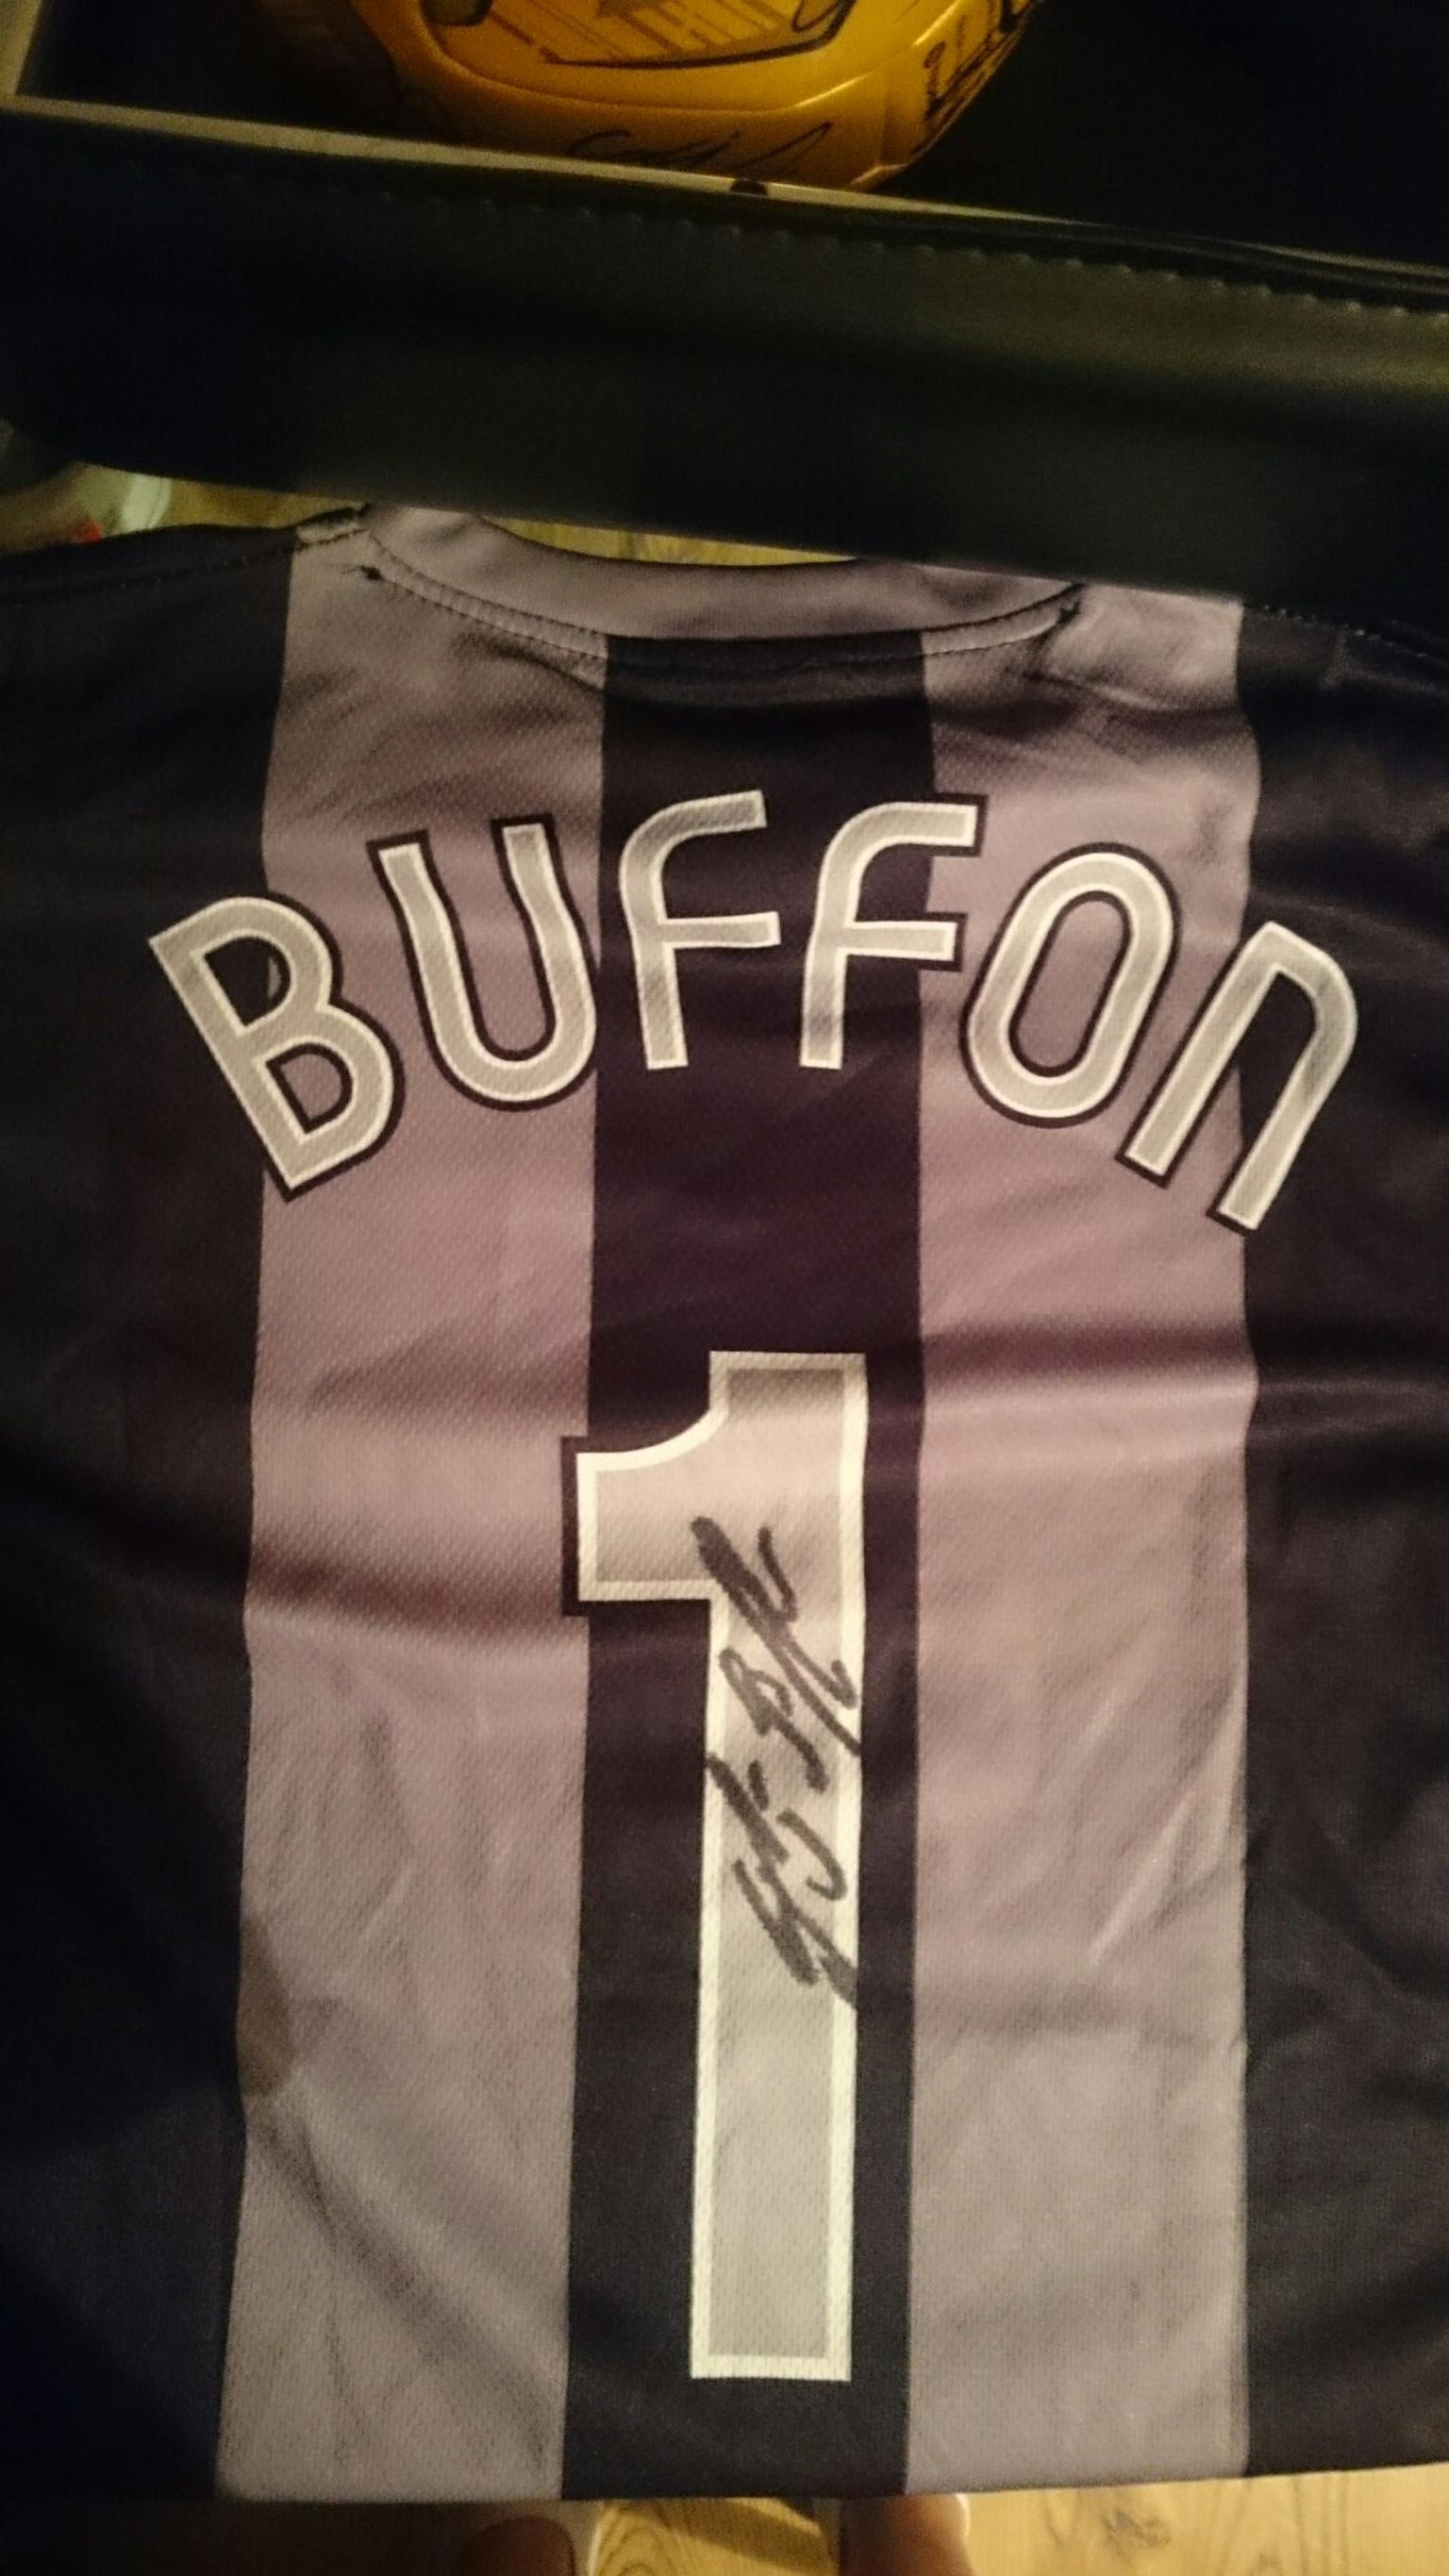 buffon signed jersey